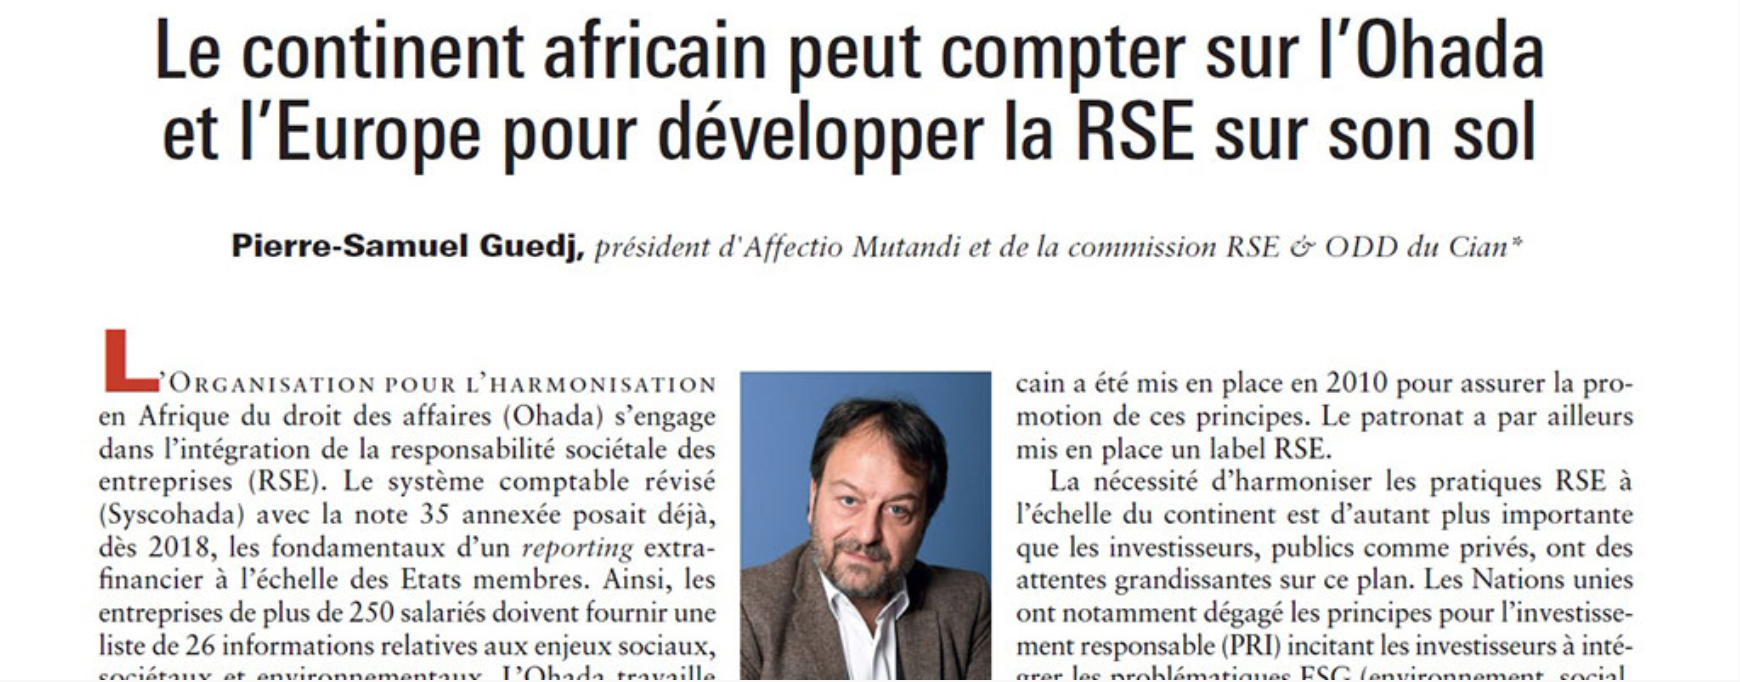 L’Ohada et l’UE de concert pour l’intégration de la RSE en Afrique